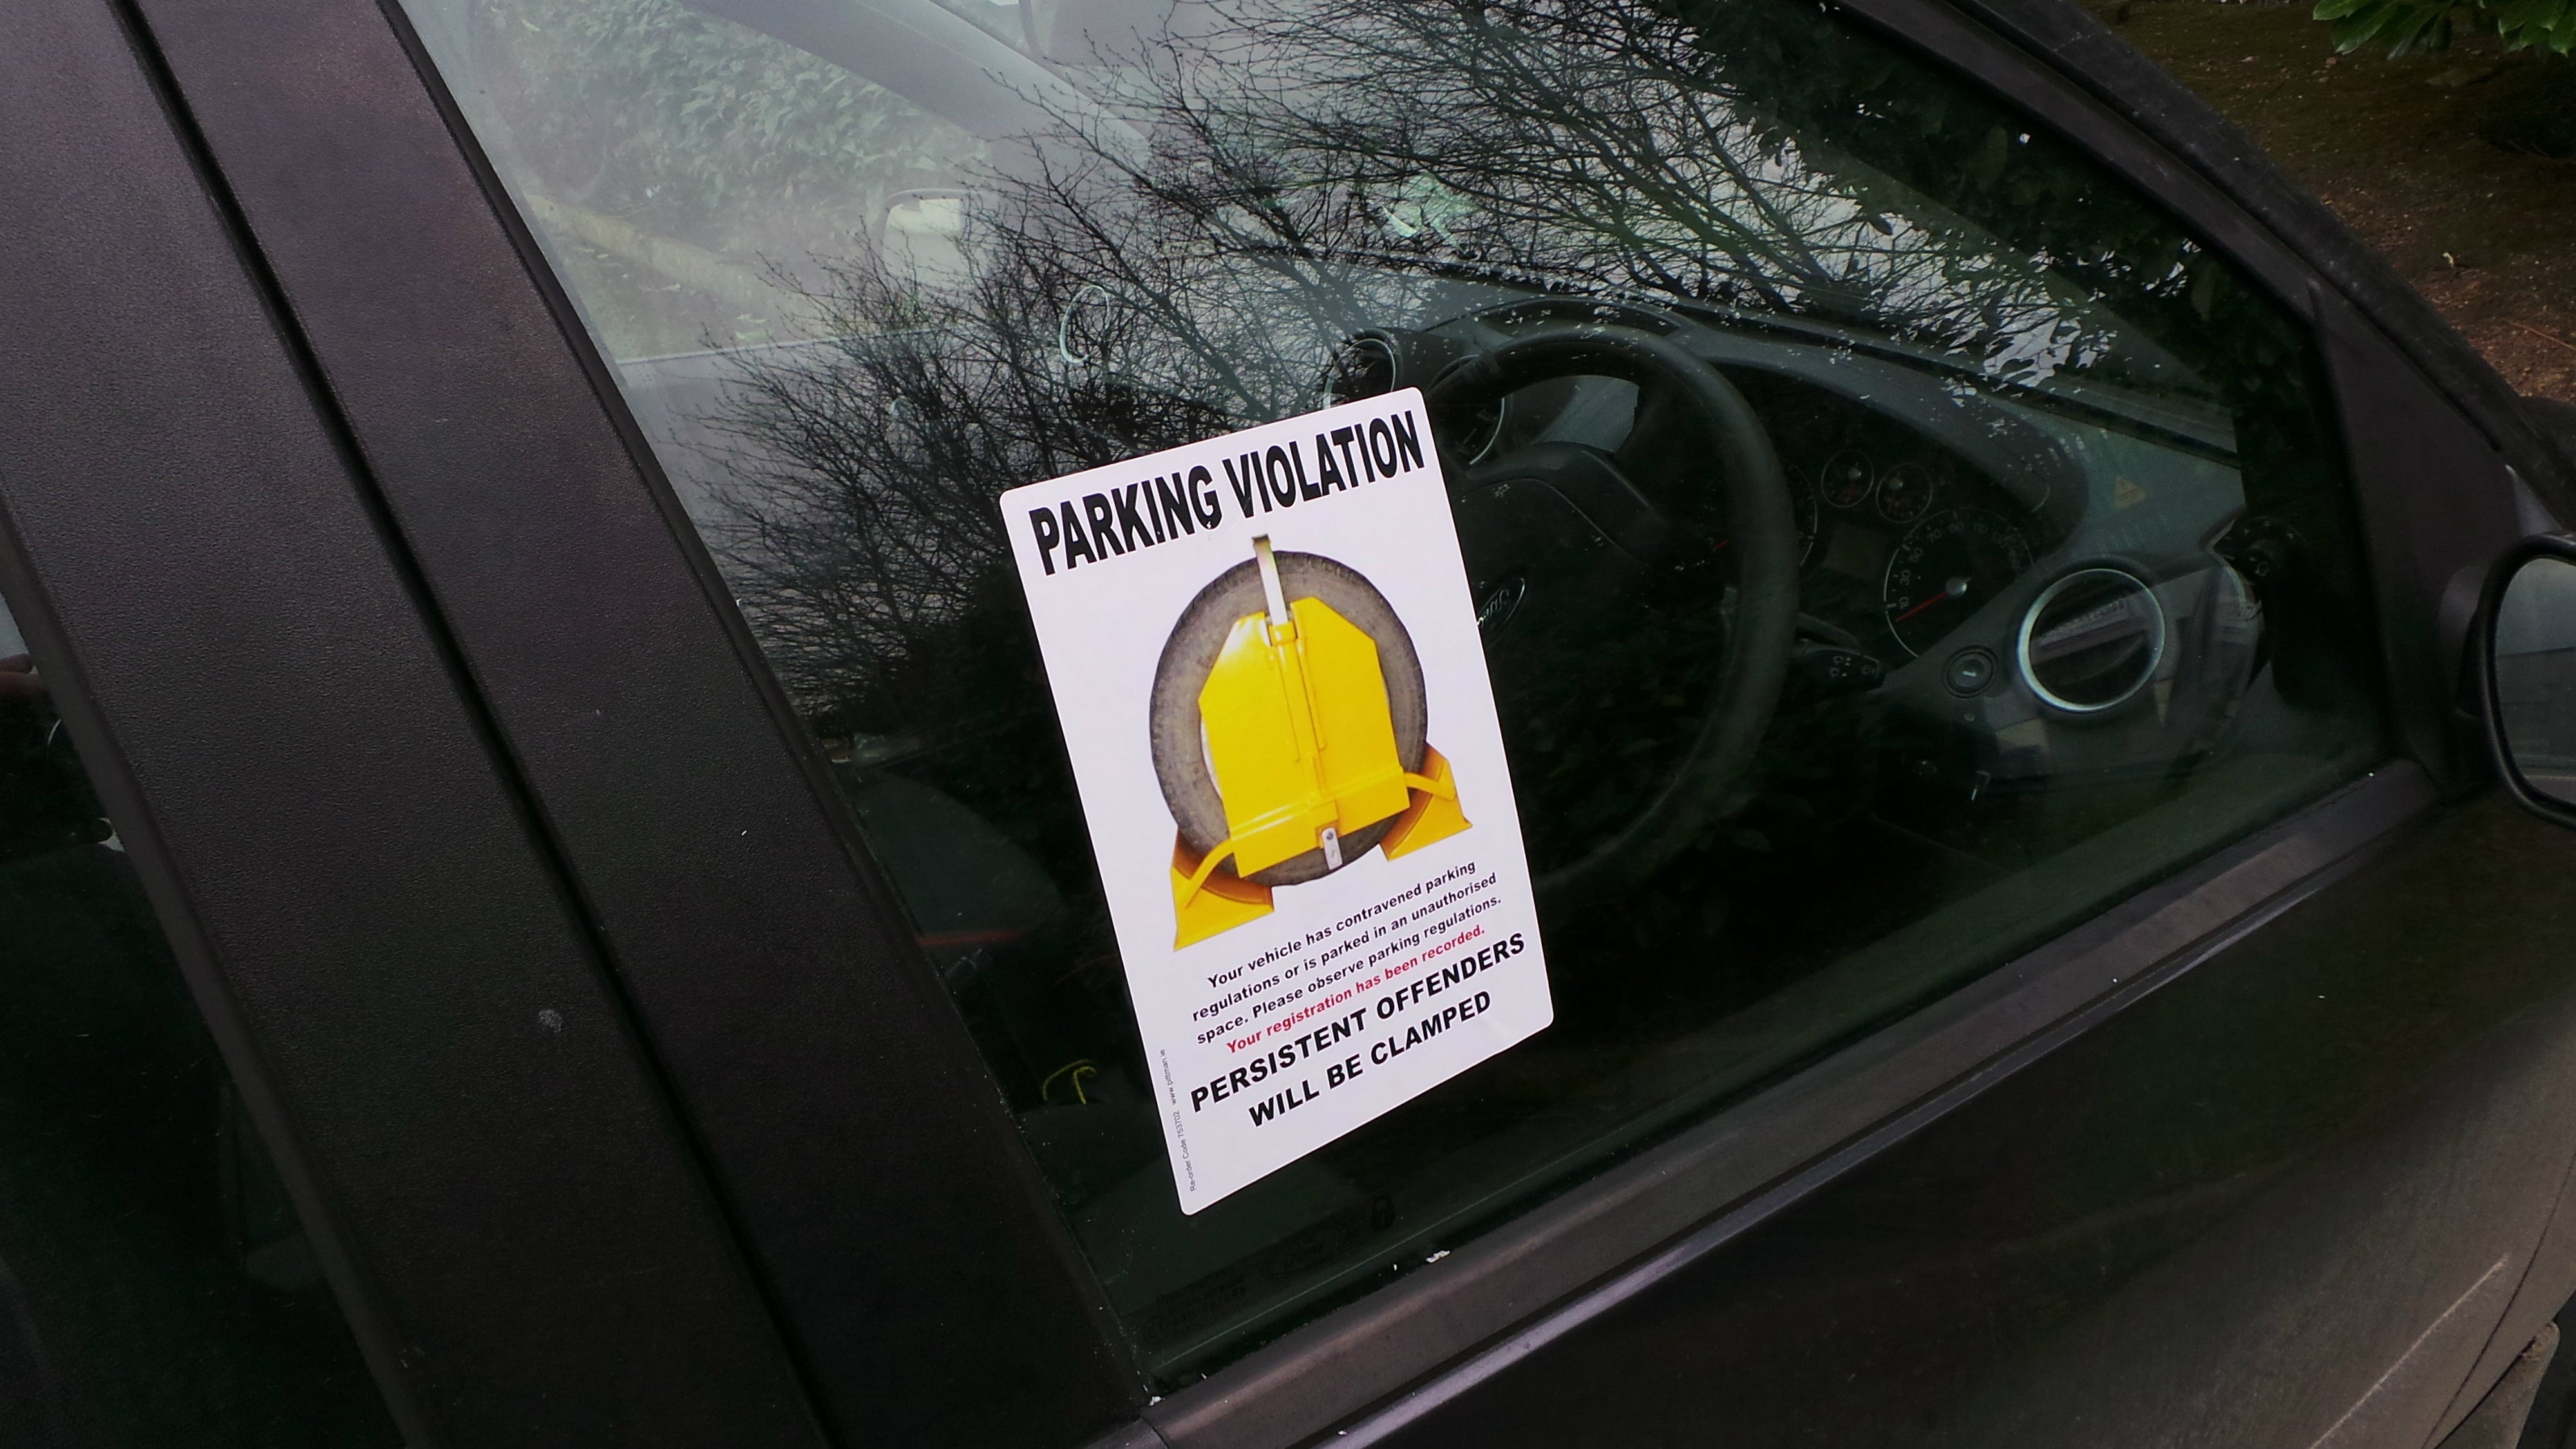 Parking Violation Sticker - Roll of 150